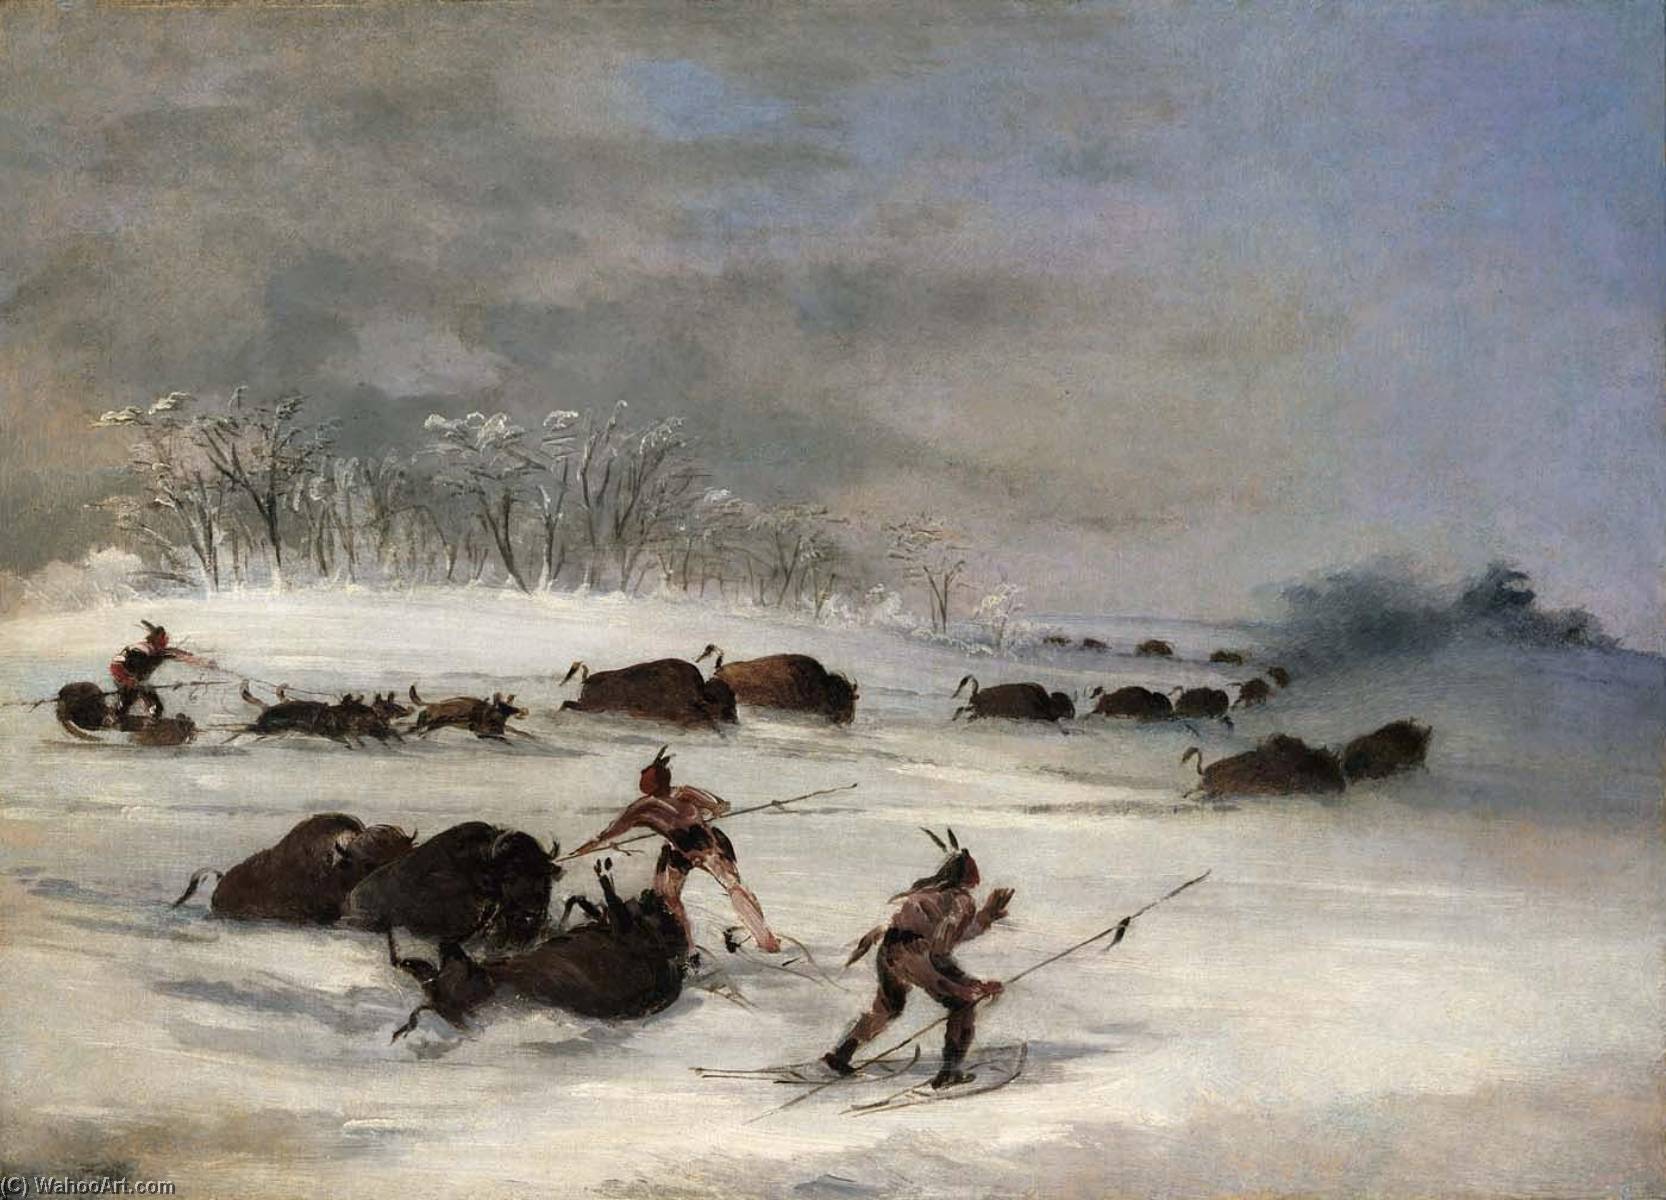 Охотились на бизонов. Джордж Кэтлин 19 век. Охотники на бизонов в 19век. Охота на бизонов в 19 веке. Живопись 19 век Бизон.